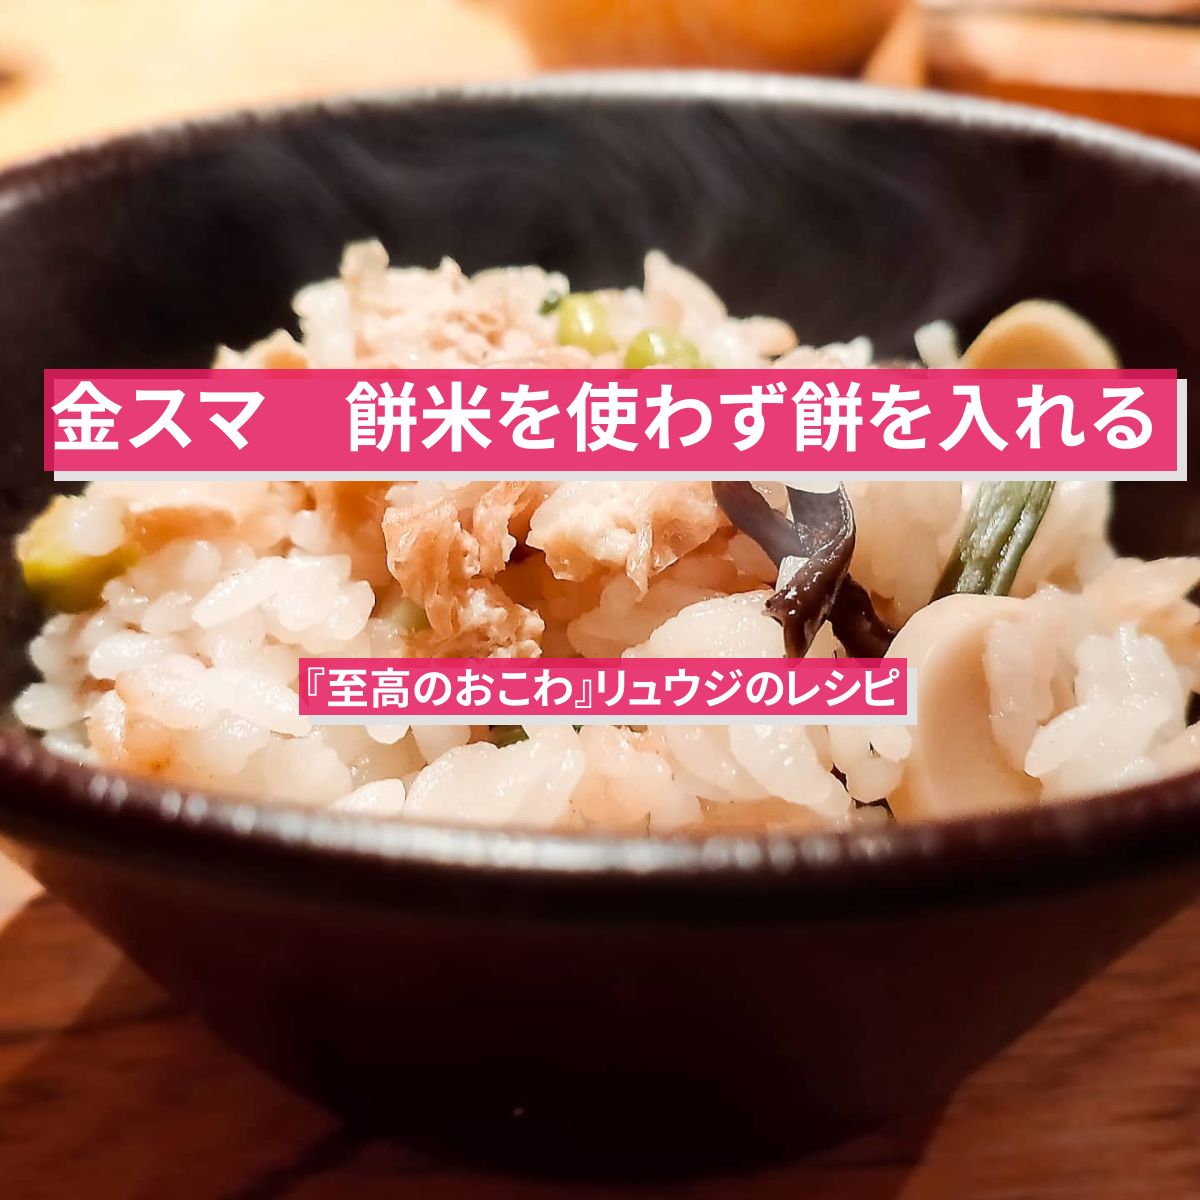 【金スマ】餅米を使わず餅を入れる『至高のおこわ』リュウジのレシピ